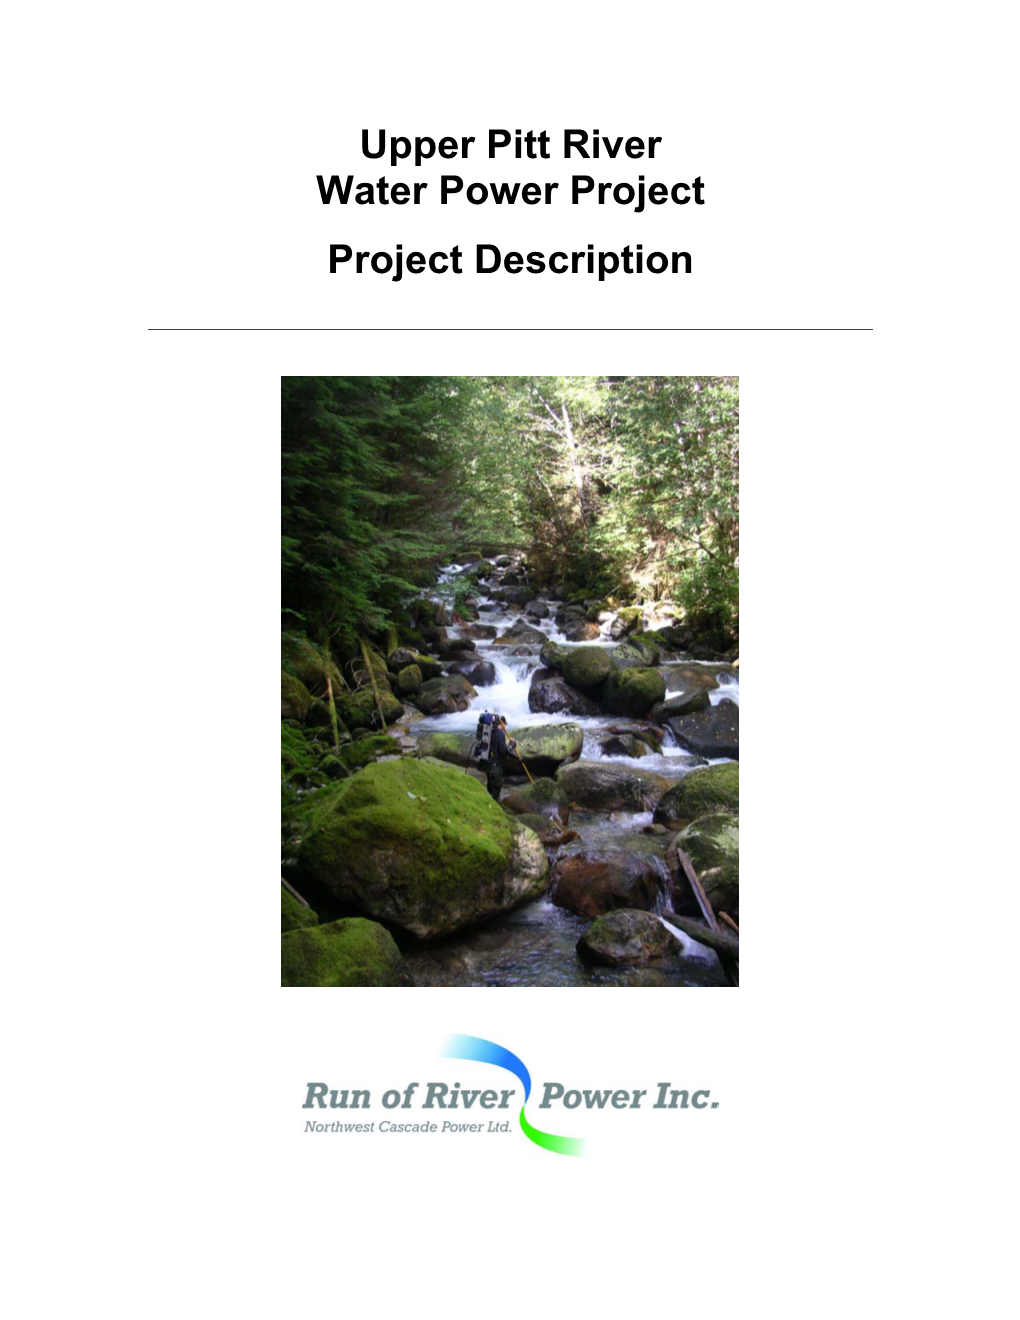 Upper Pitt River Water Power Project